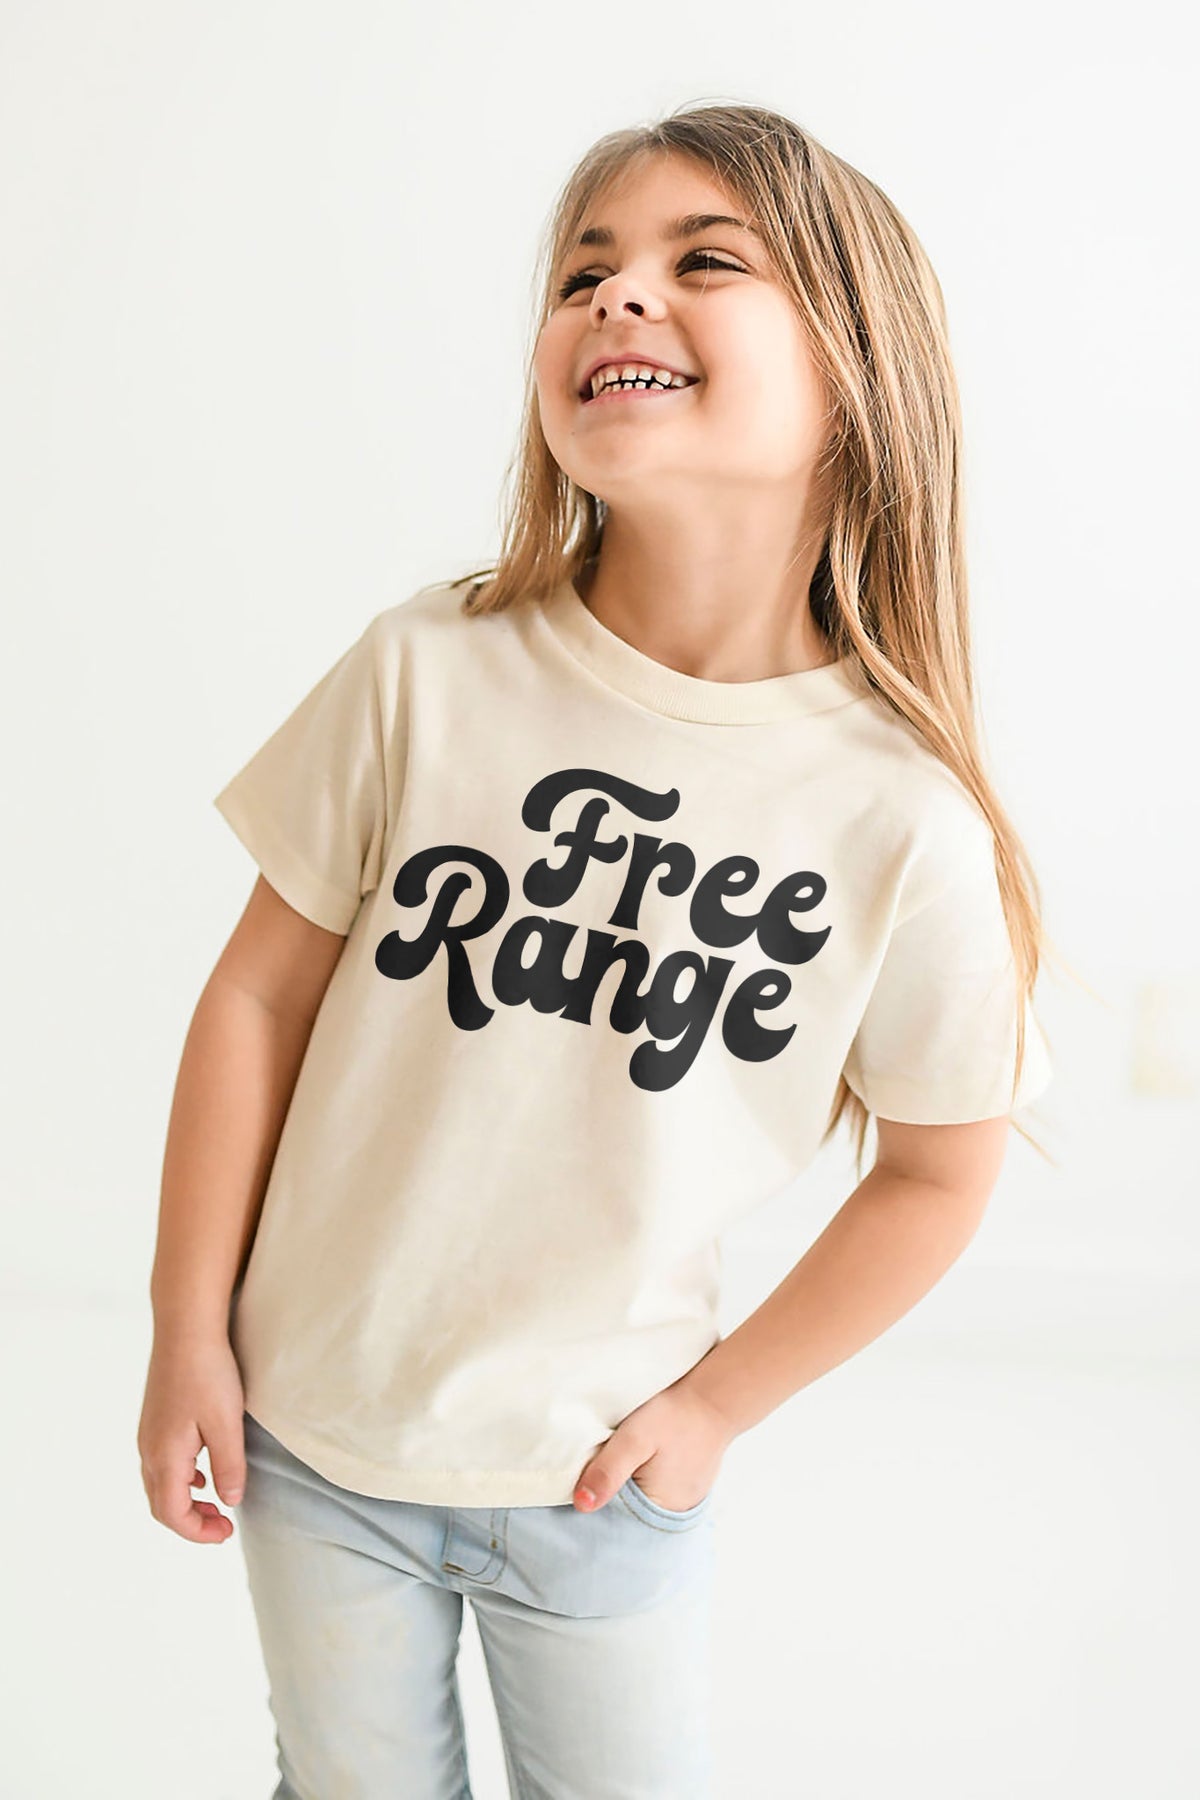 Free Range Shirt - Kids